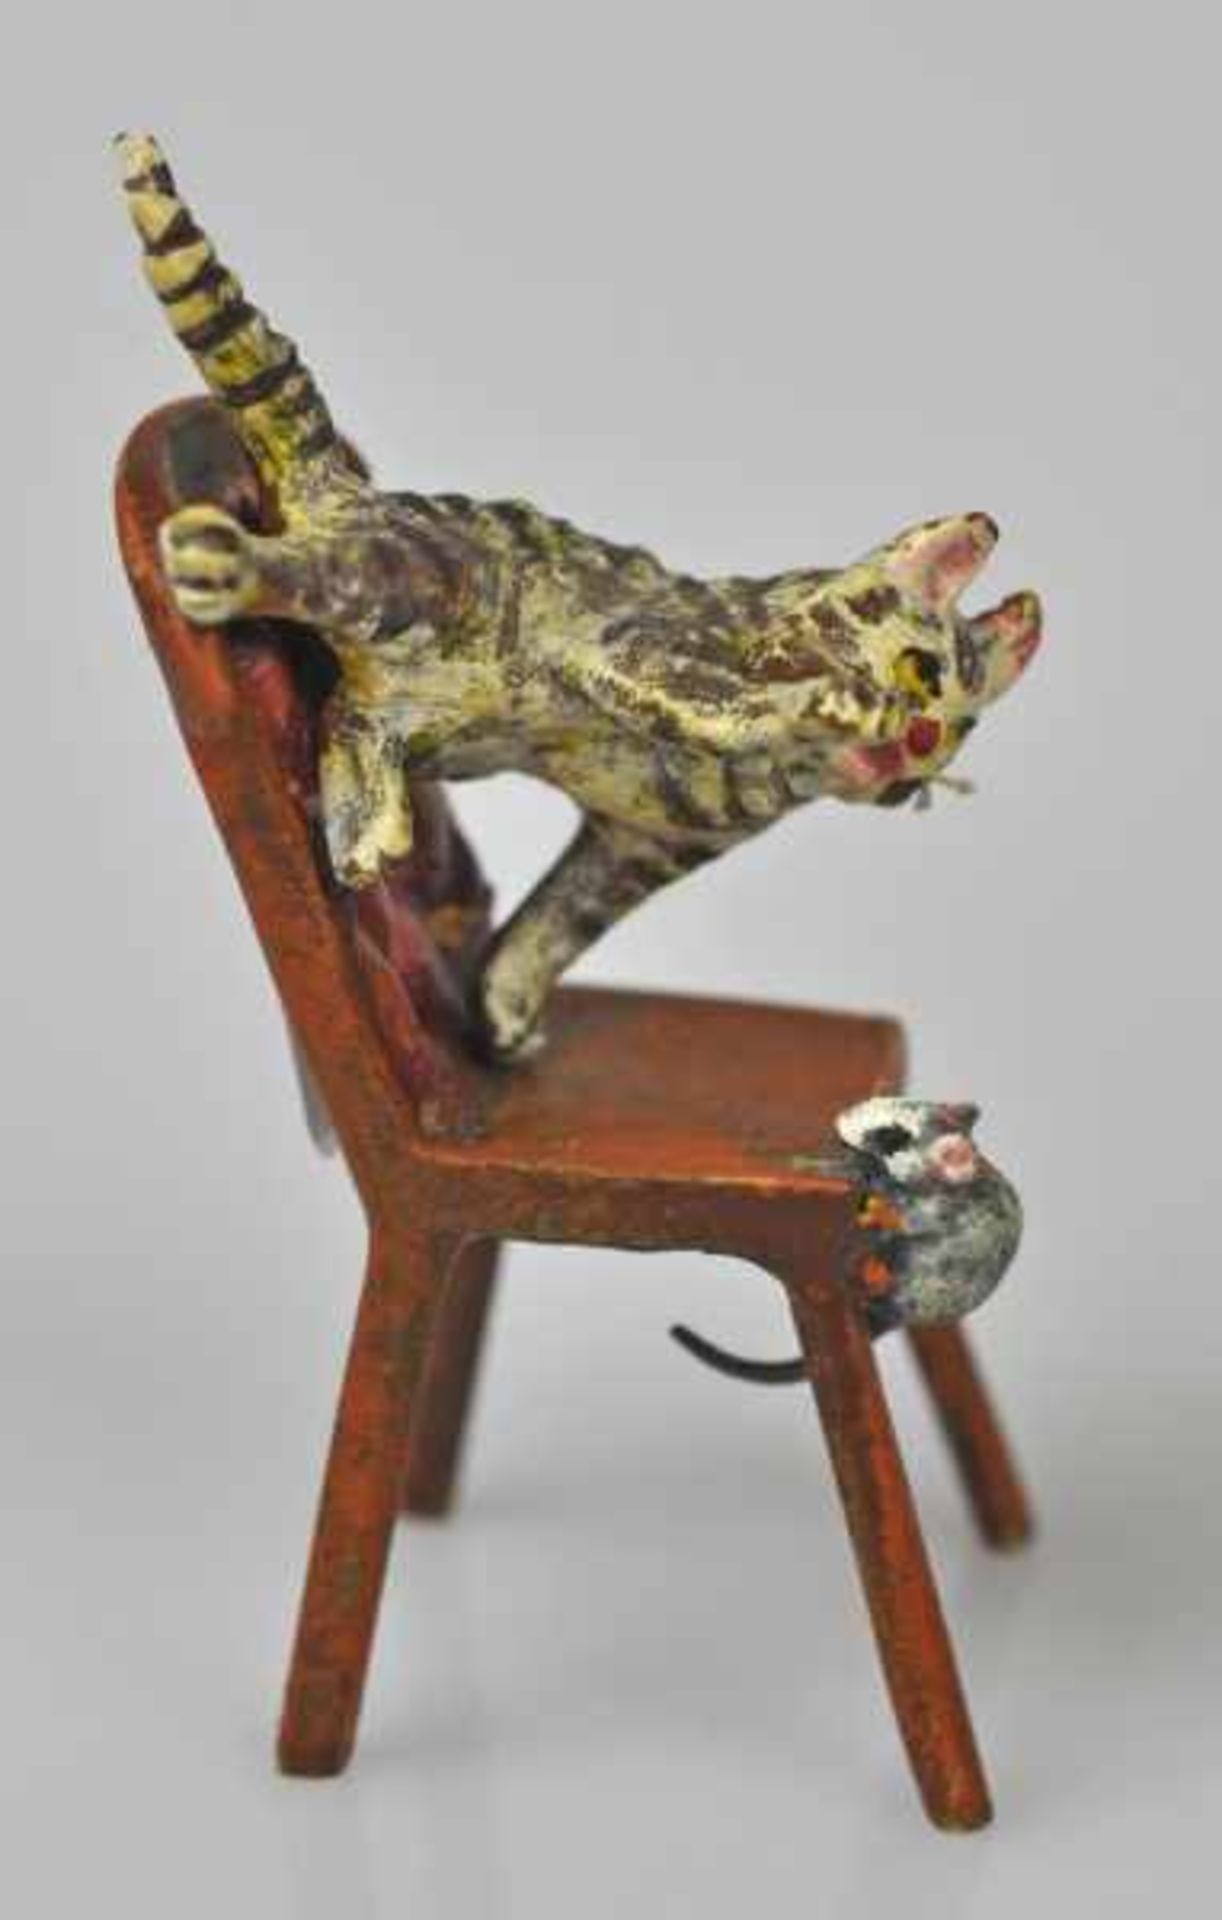 KATZE eine Maus jagend, auf Stuhl, Wiener Bronze, gemarkt u. bez. Bermann Wien, H 5cm - Bild 3 aus 3